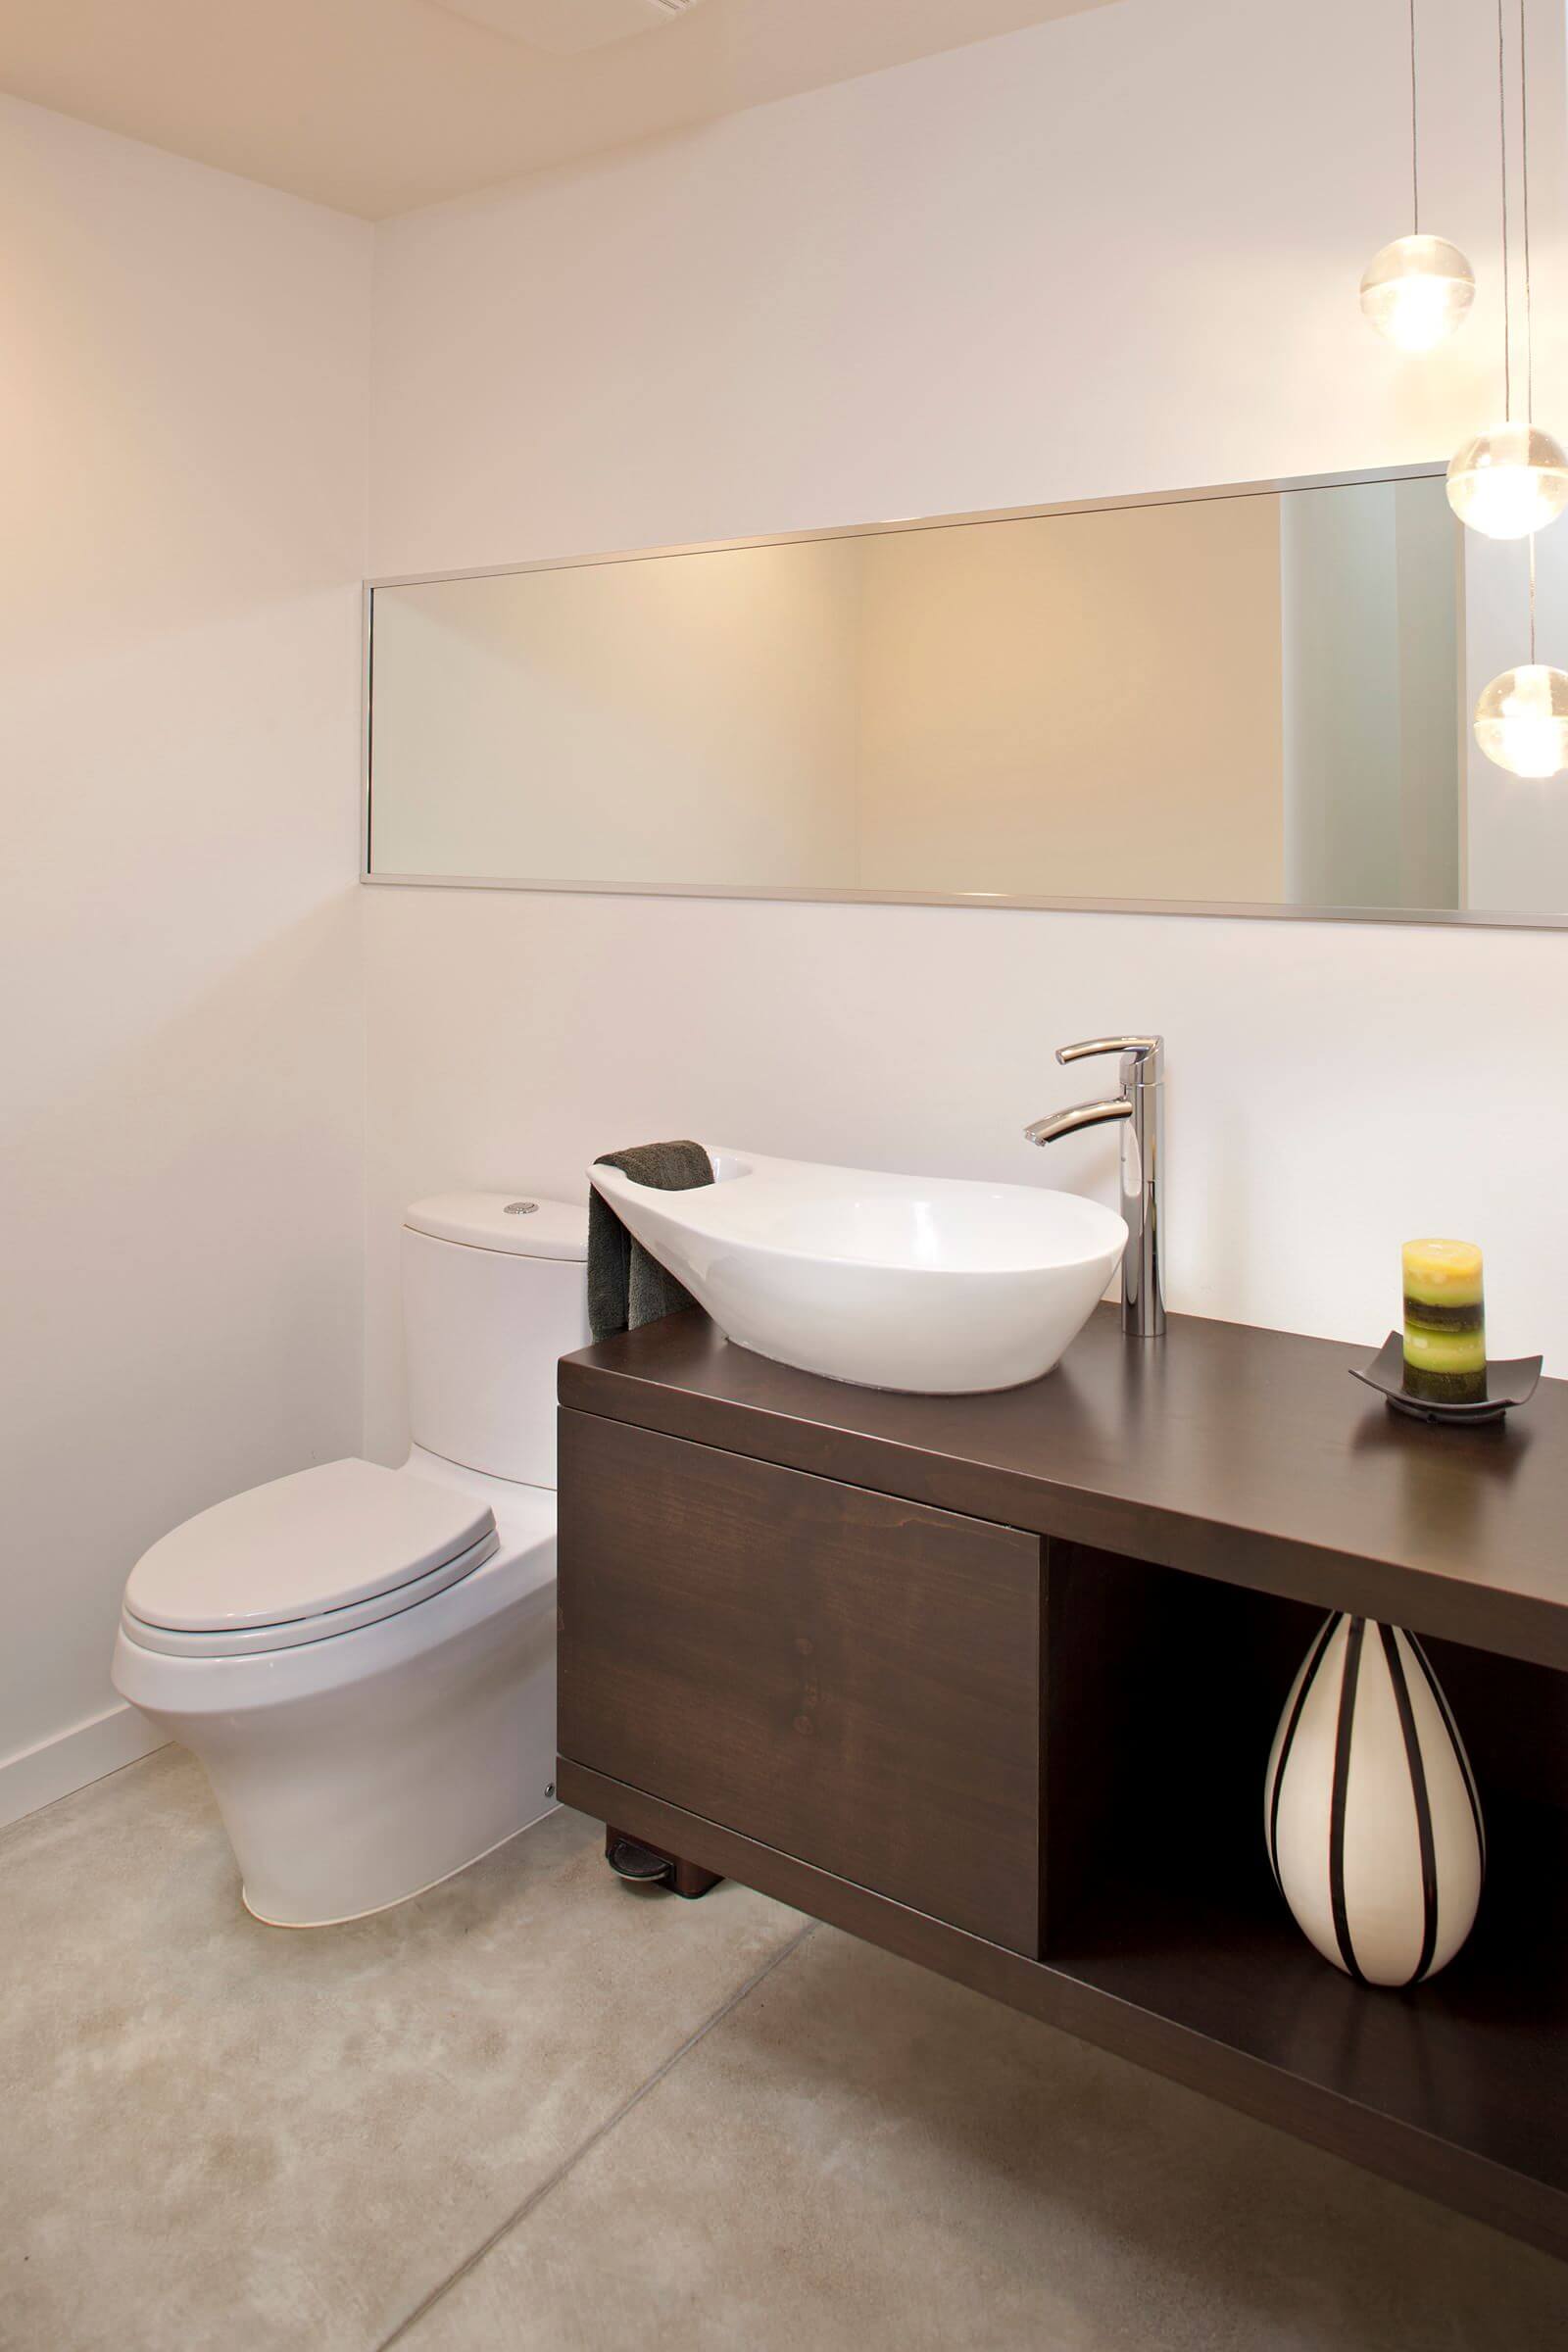 14 contemporary bathroom faucet designs